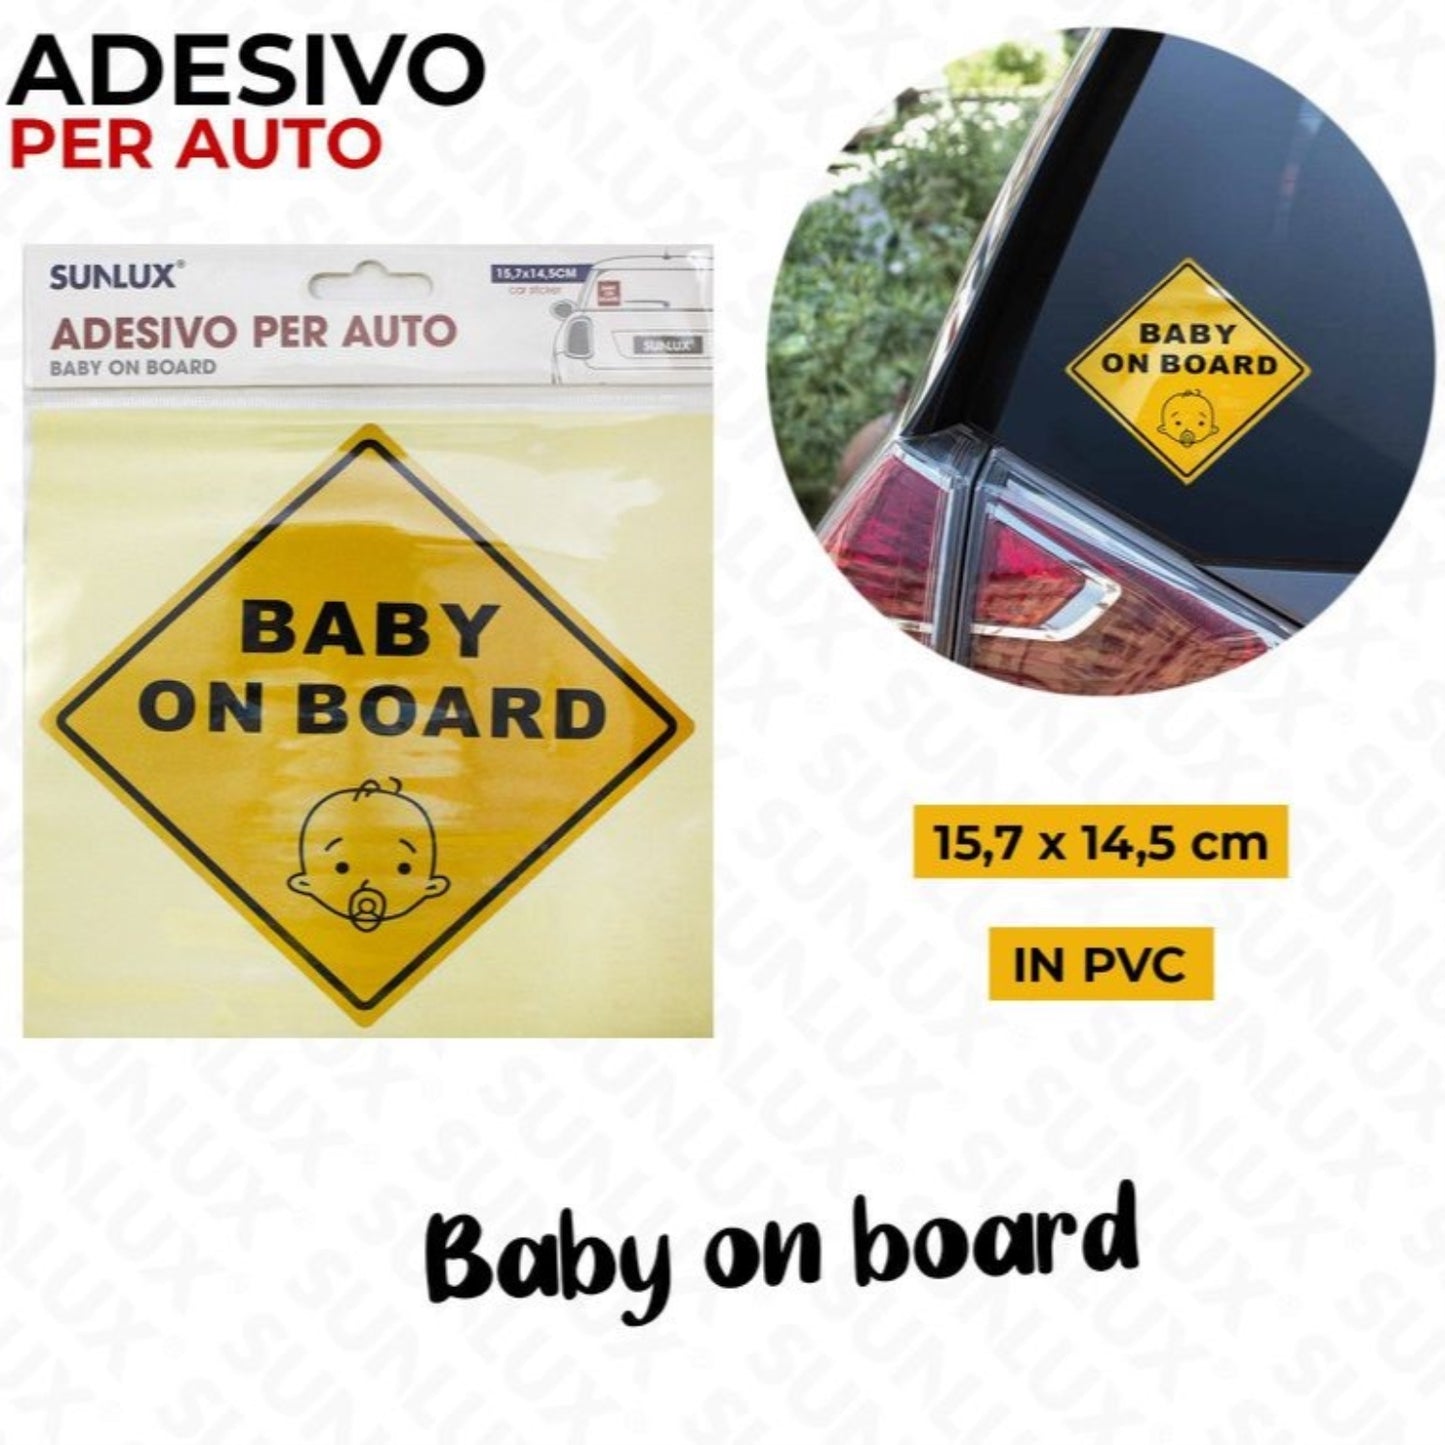 BABY ON BOARD ADESIVO PER AUTO